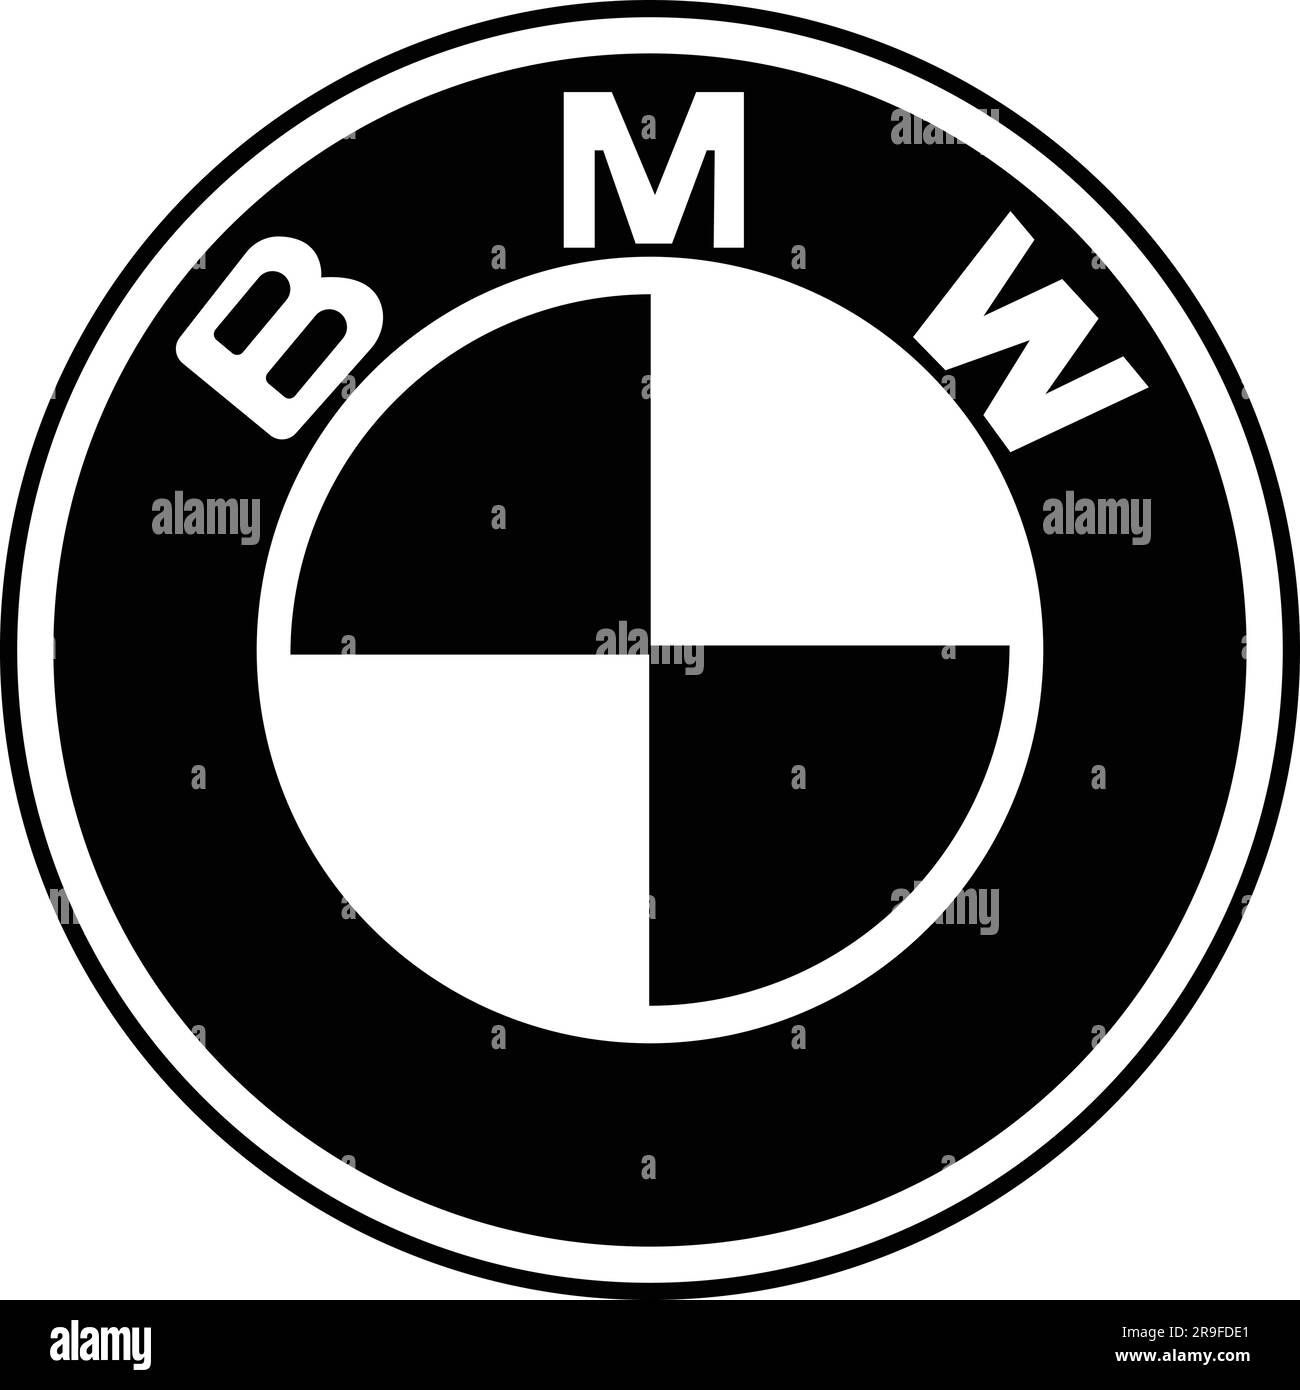 Bmw logo Banque d'images noir et blanc - Alamy